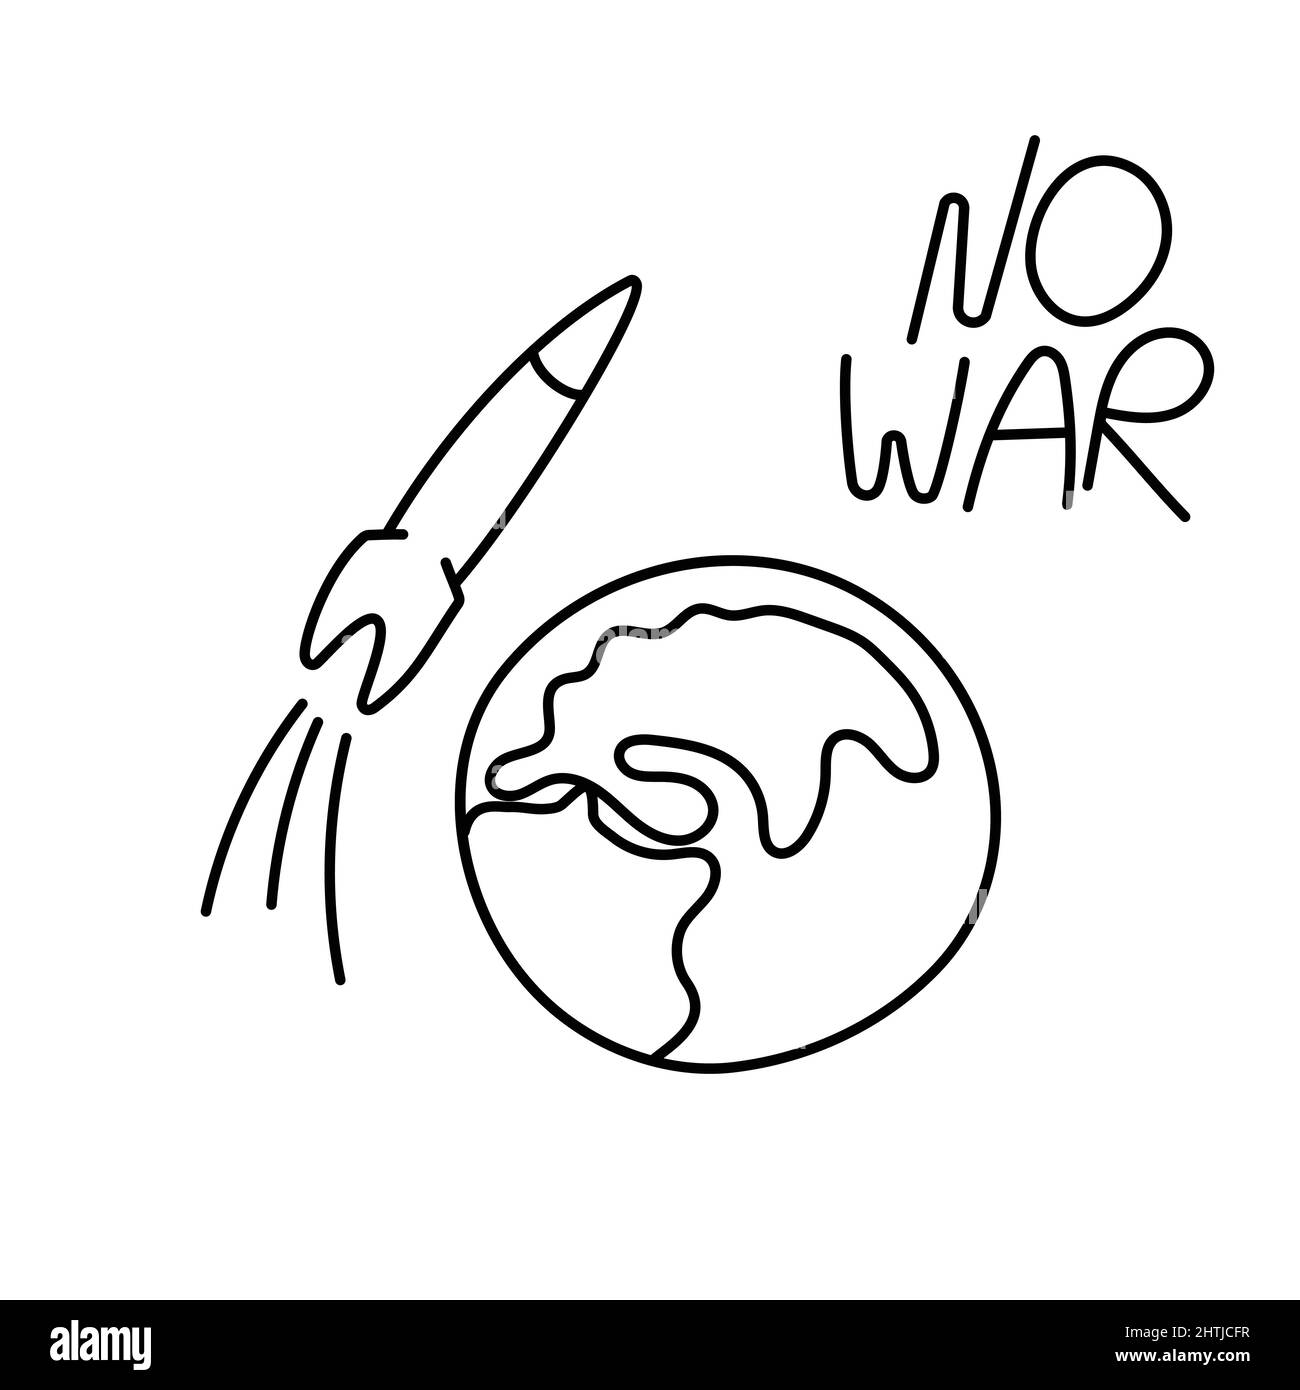 Militärische Rakete fliegt zur Erde. Doodle-Vektor-Umriss-Illustration. Kein Kriegskonzept. Stock Vektor